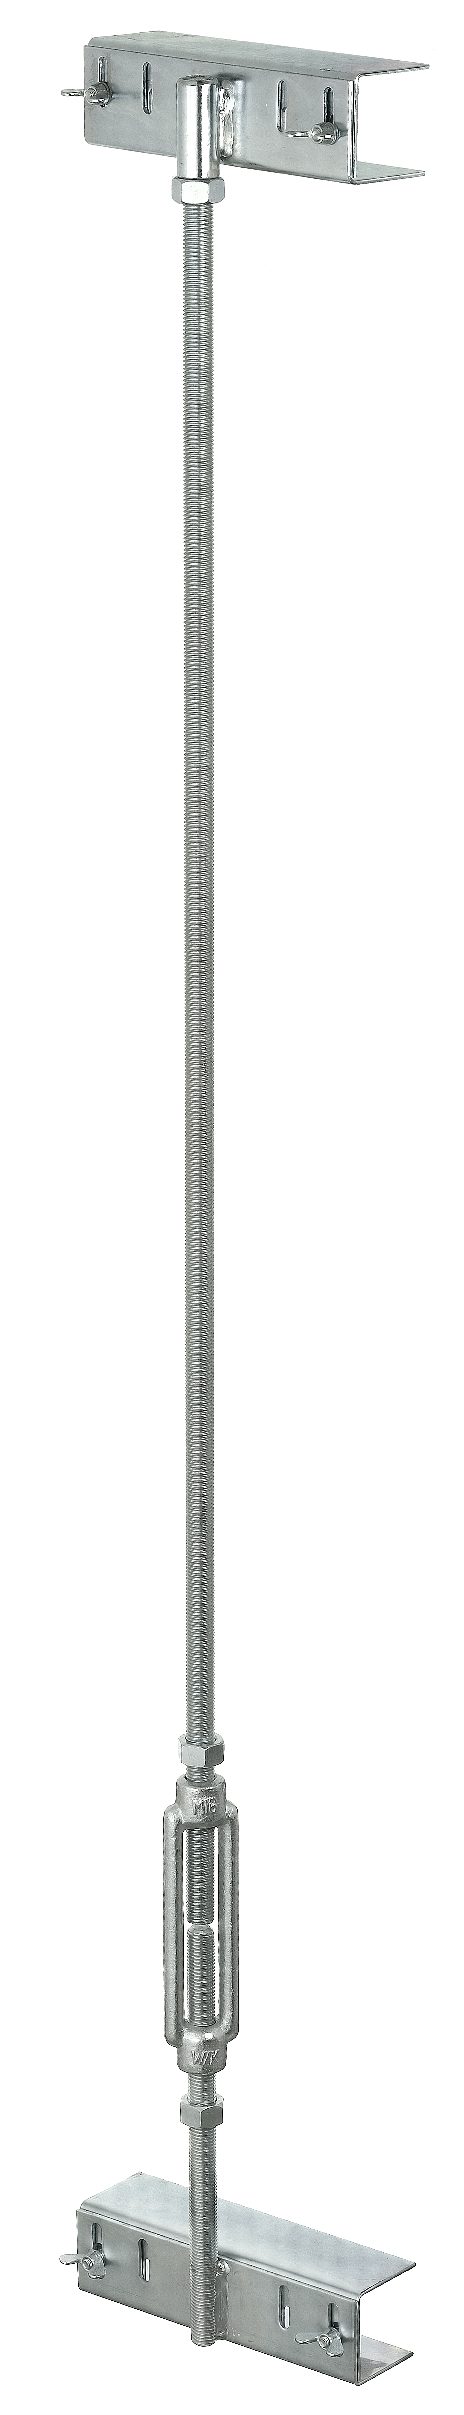 Montagelehre variabel für Nagelbinder, M16x700-1200 mm, galvanisch verzinkt